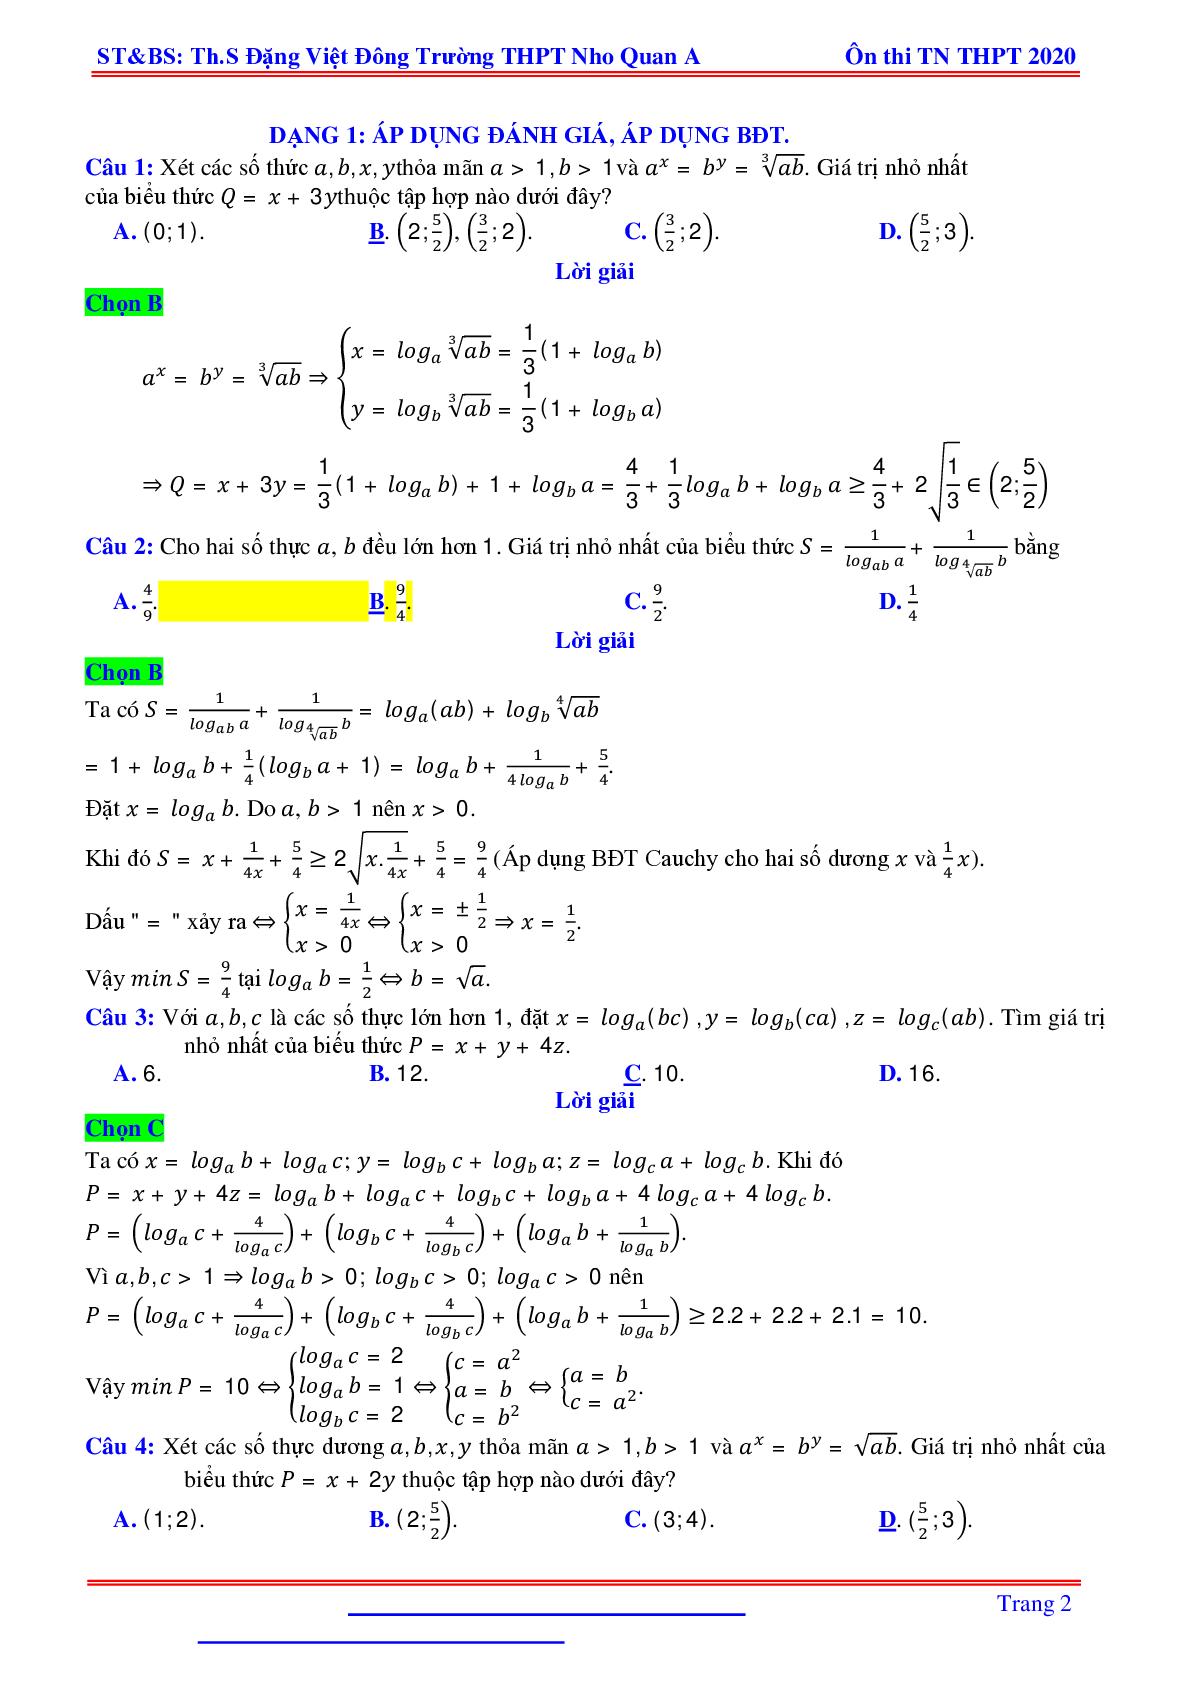 Bài toán min-max liên quan hàm số mũ, logarit nhiều biến - Đặng Việt Đông (trang 2)